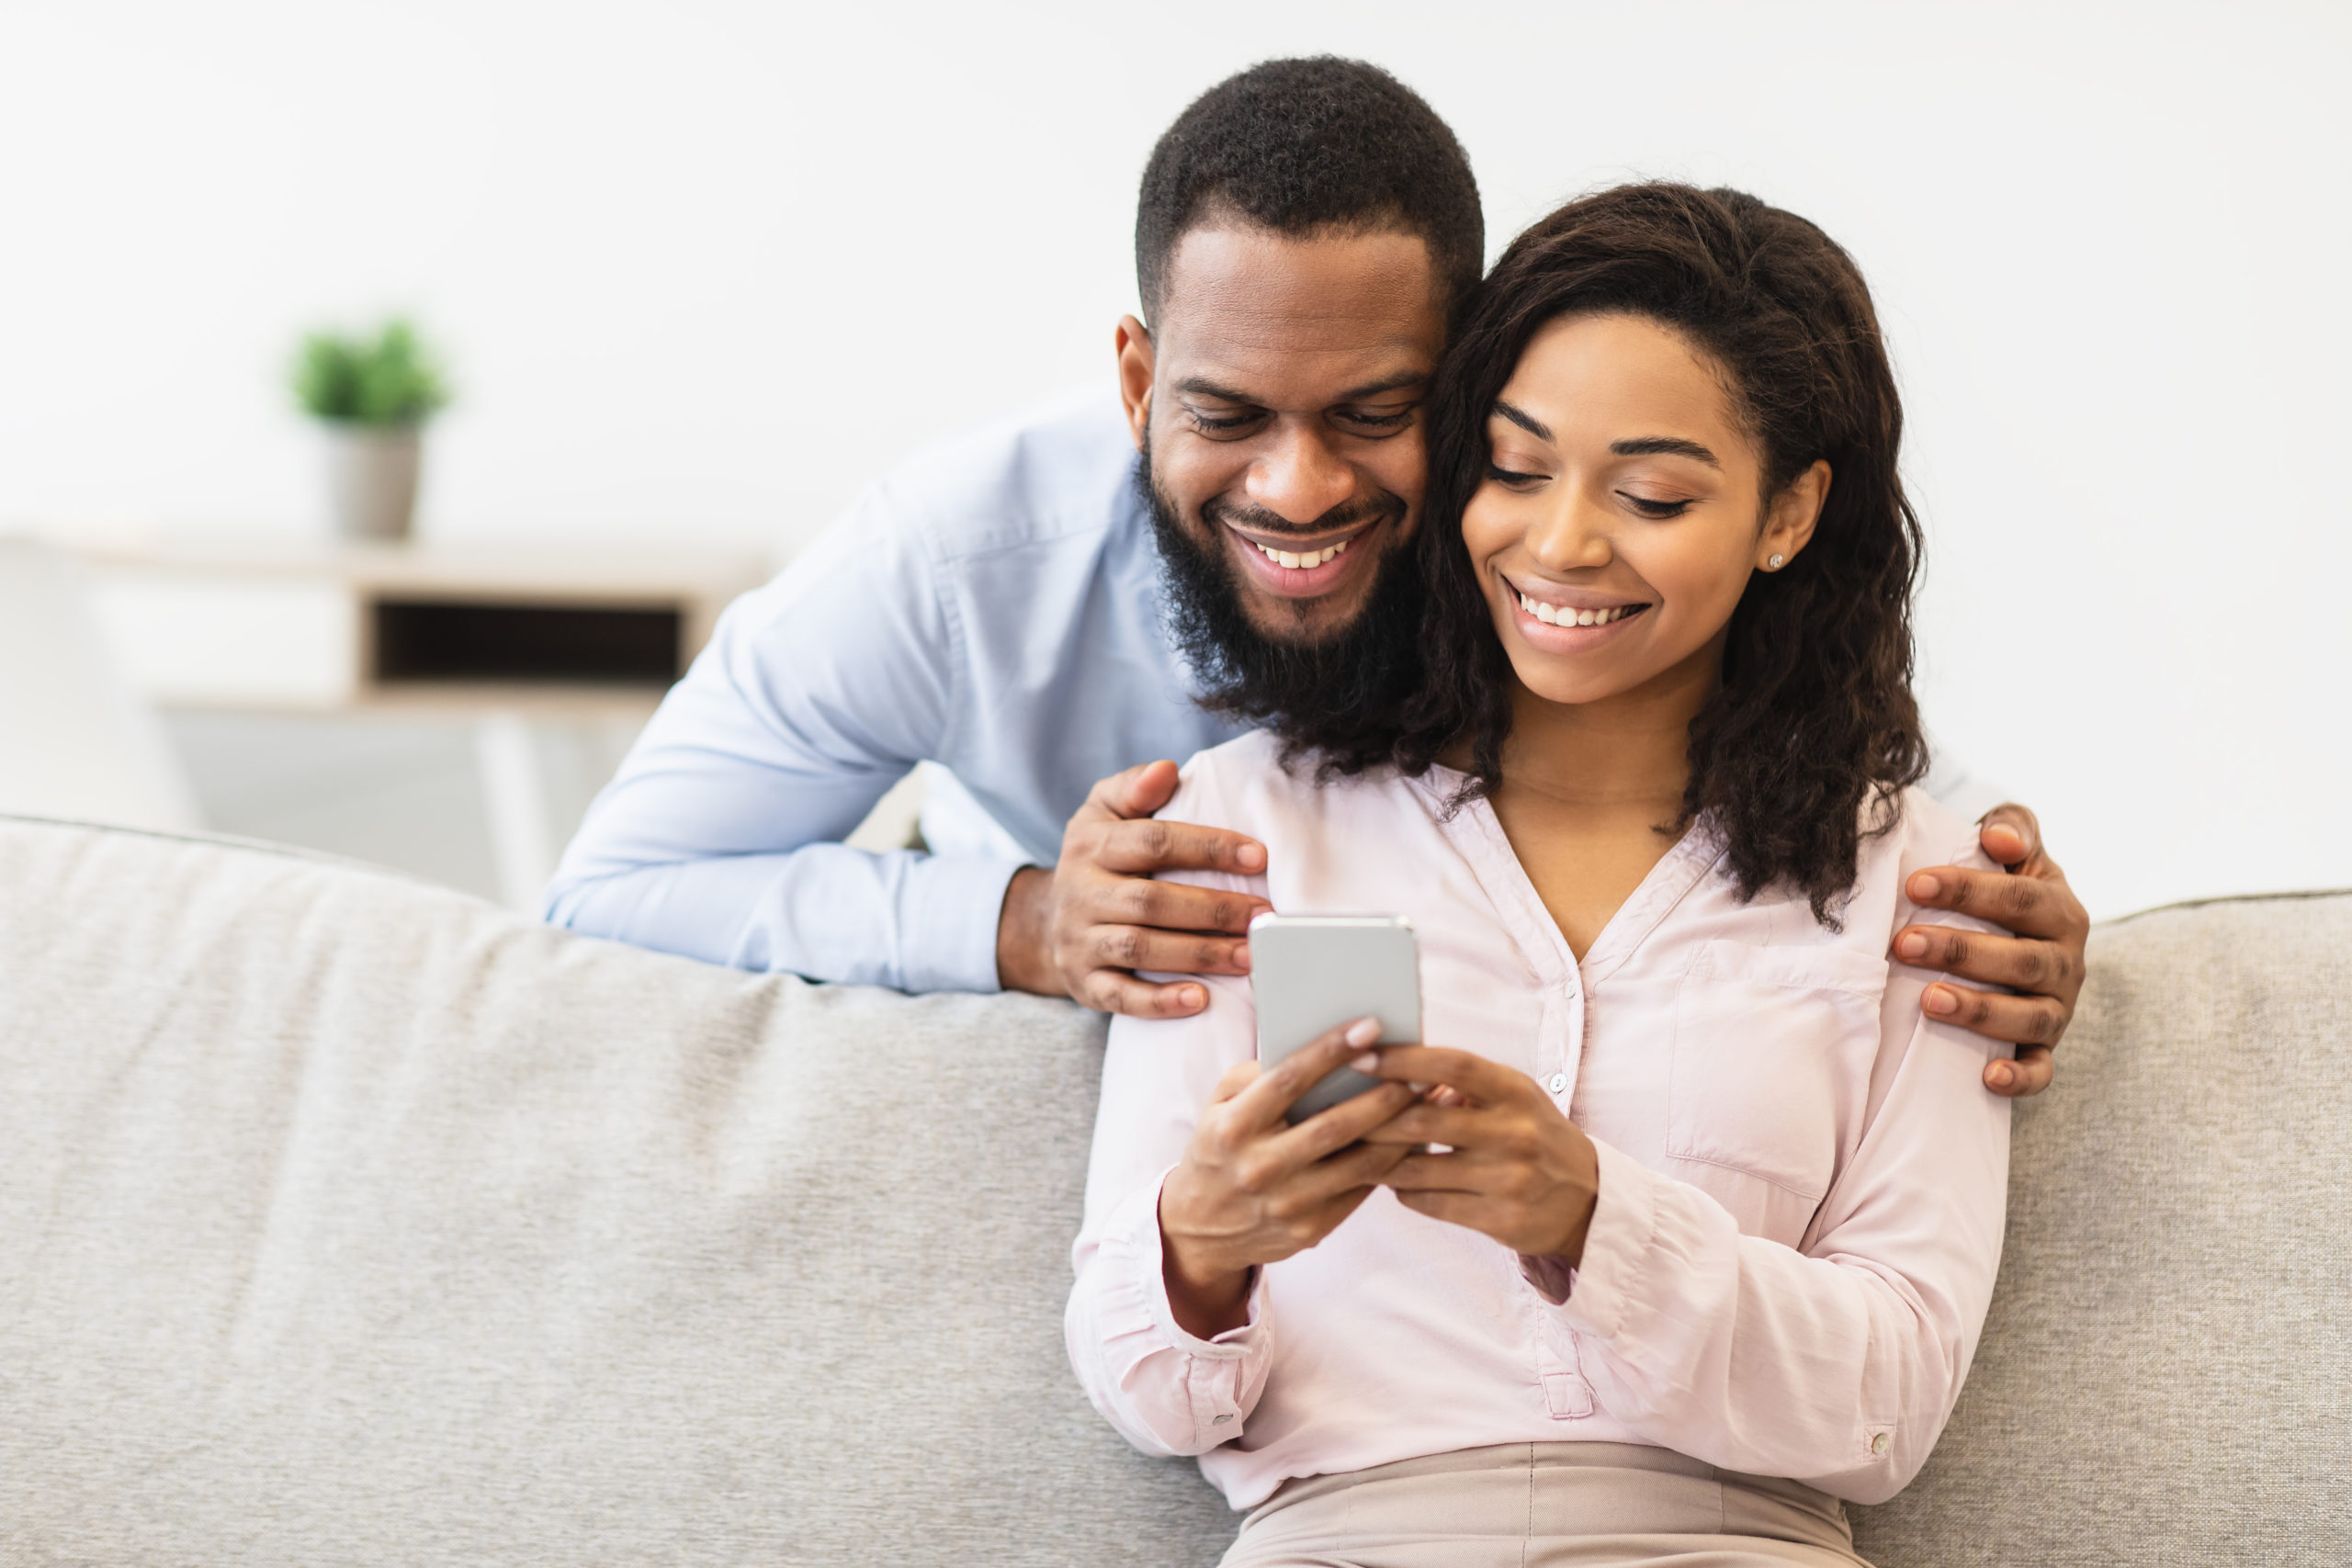 couples-budgeting-app-qube-money